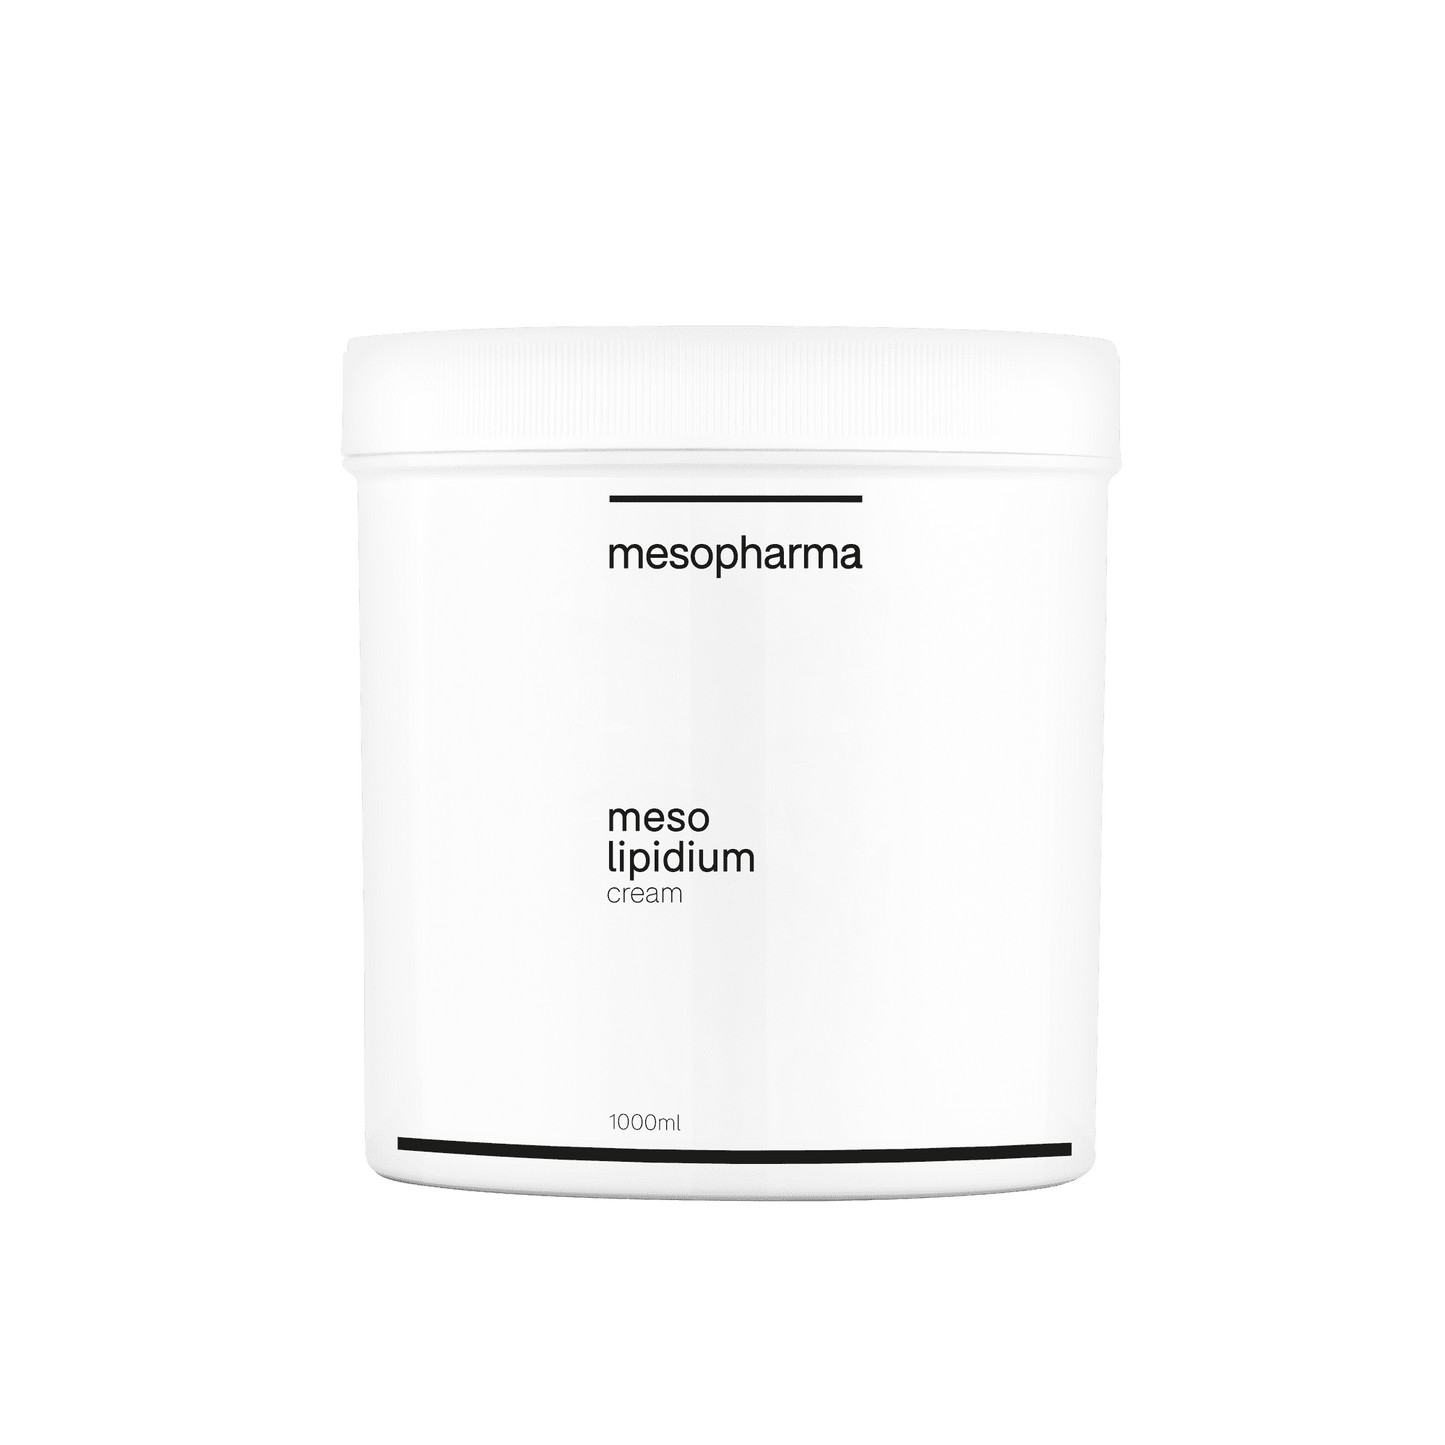 Meso lipidium cream